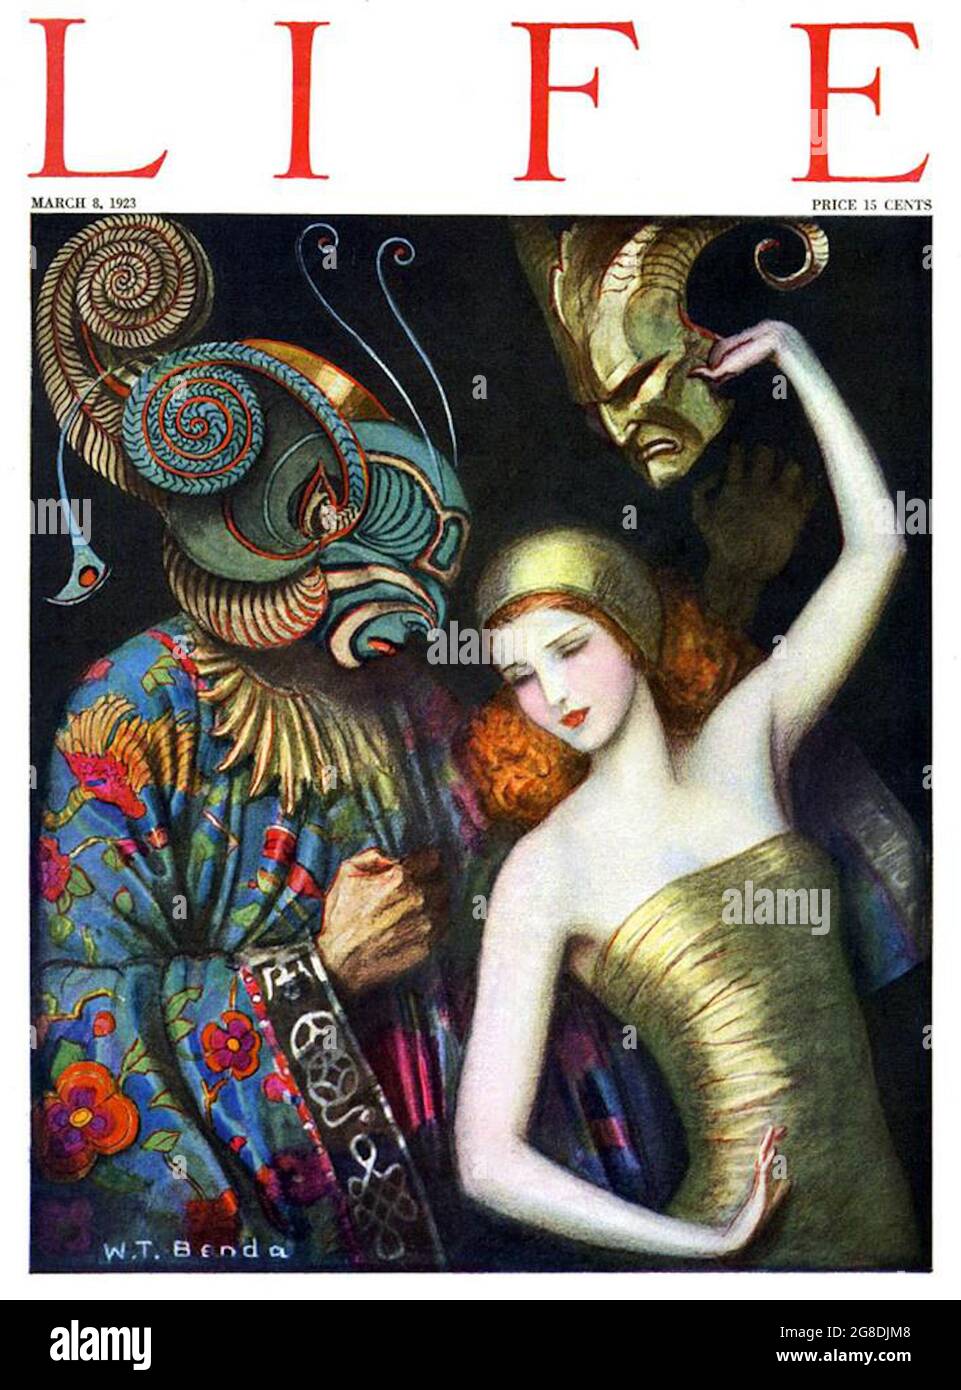 Władysław Teodor Benda - disegno di copertina di Life Magazine. L'uomo mascherato vestito in modo flambigente interagisce con una donna che tiene in mano una maschera. Foto Stock